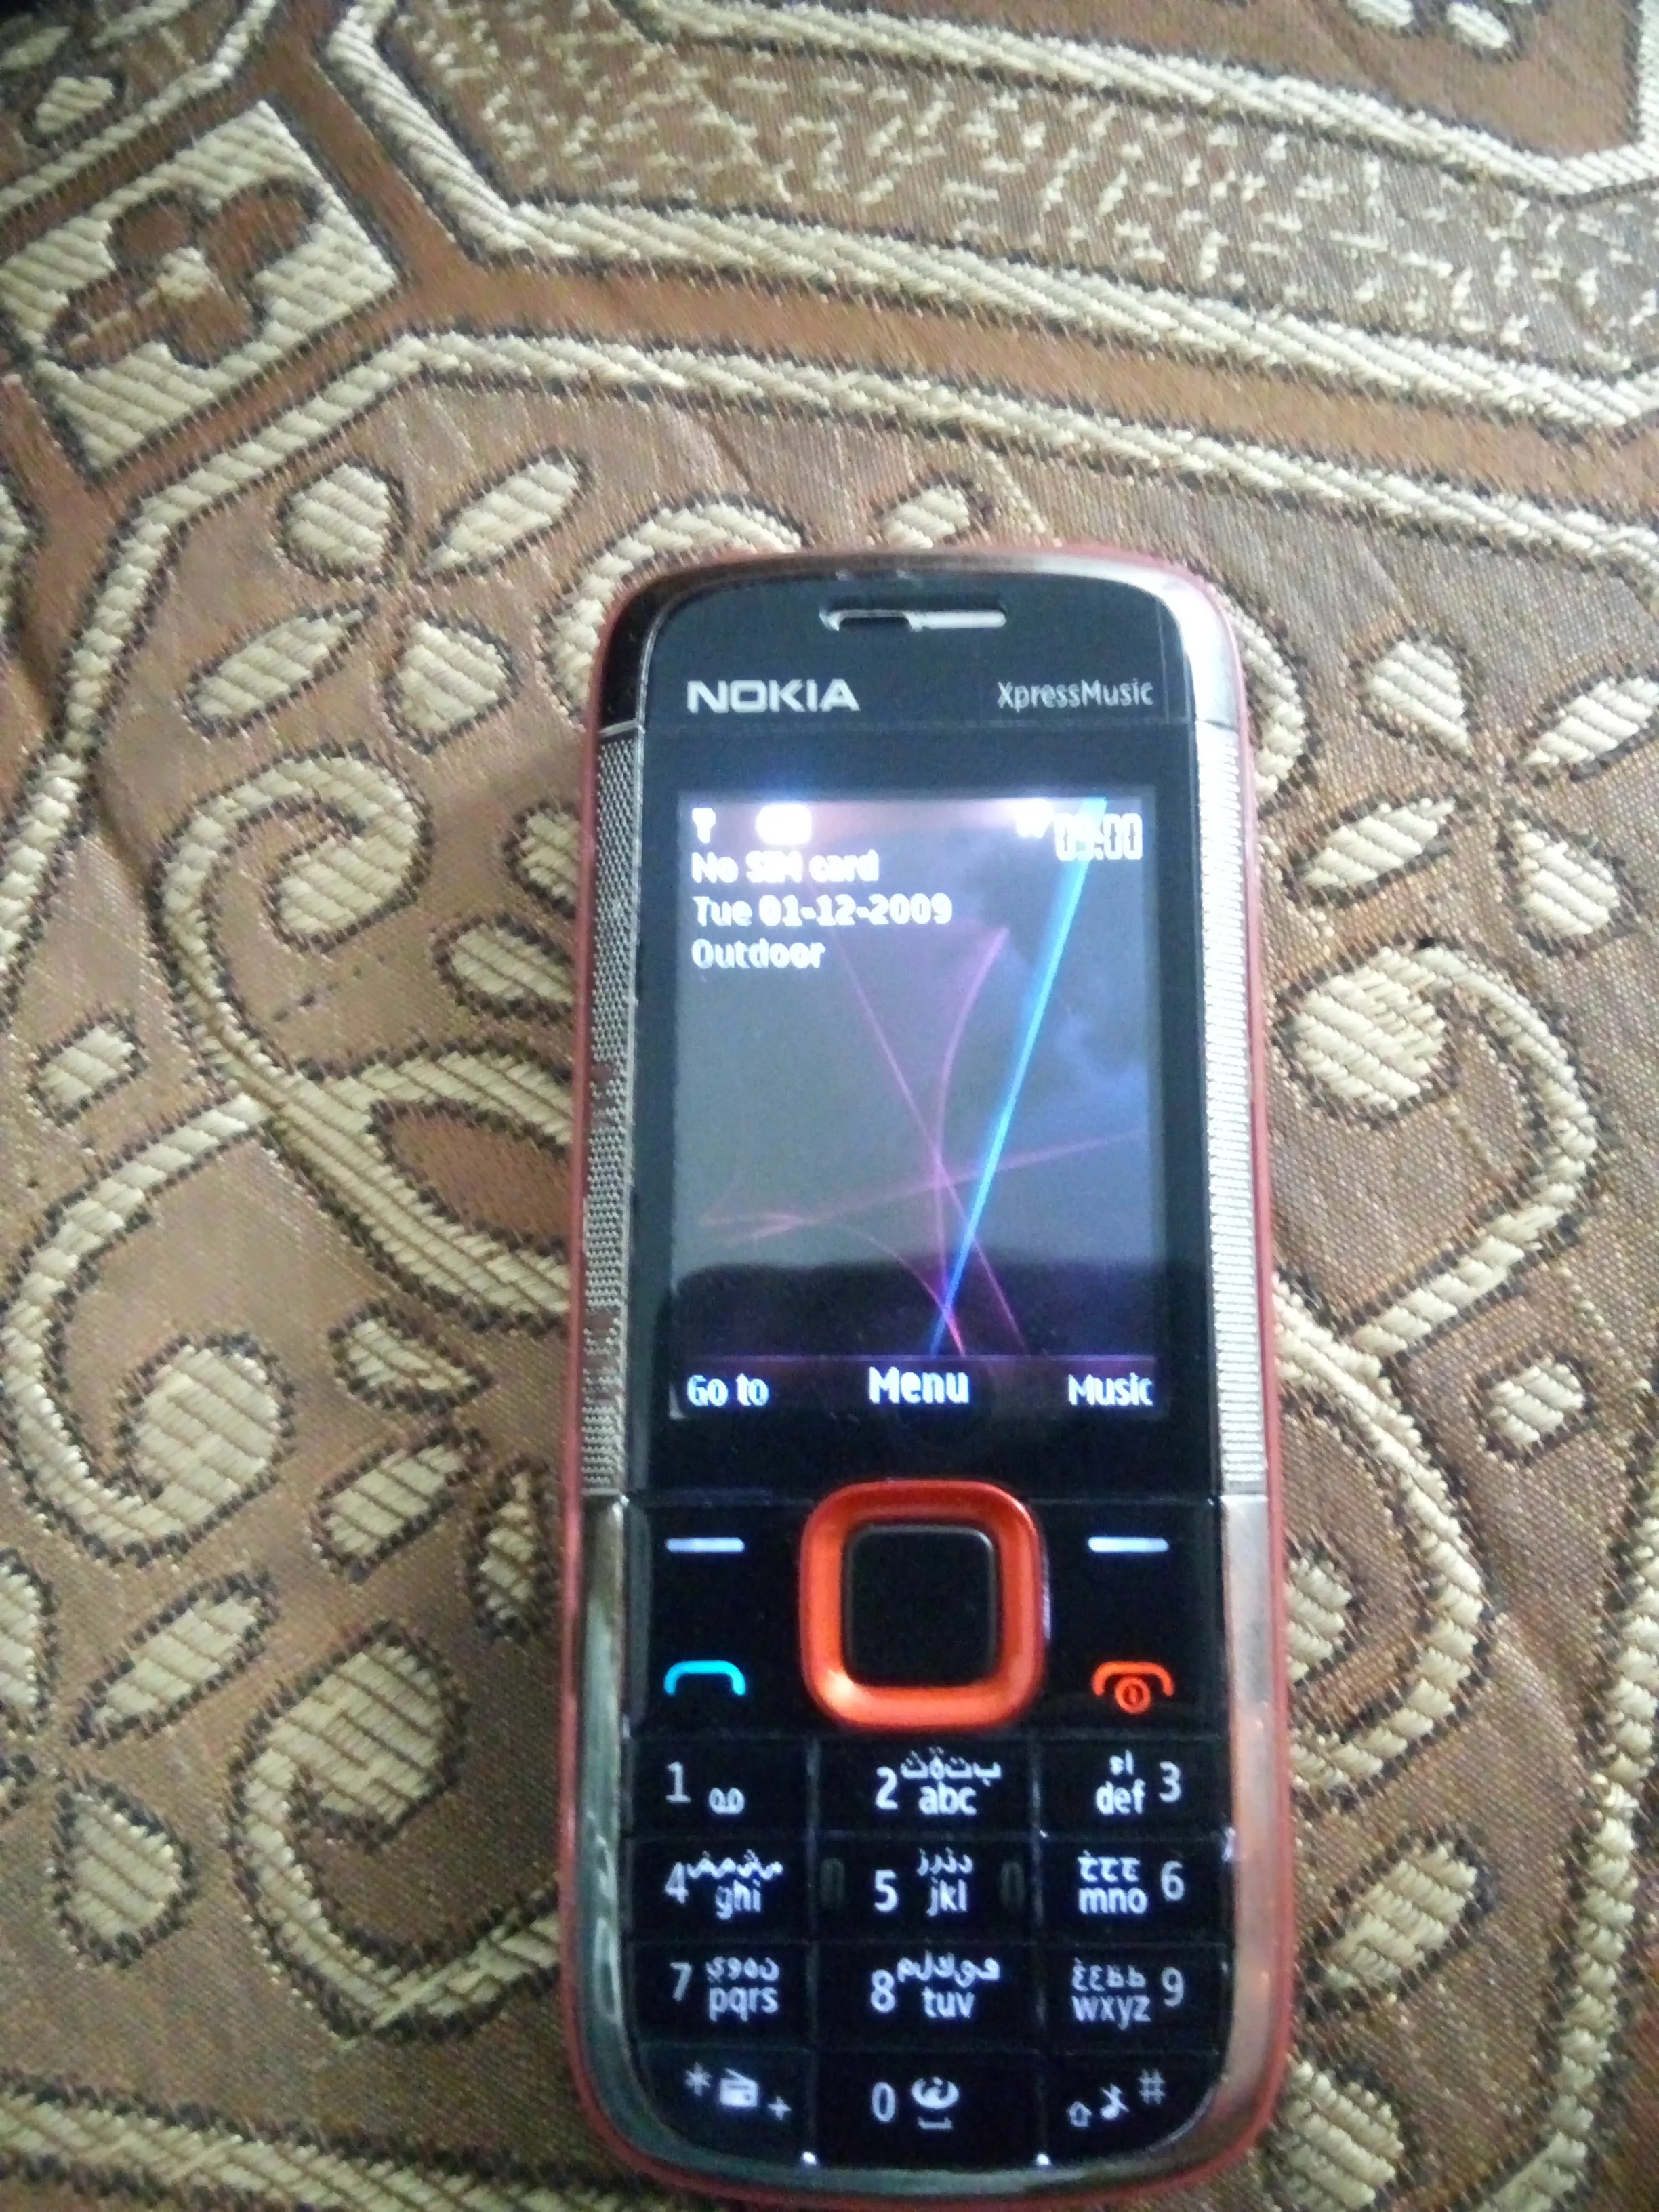 Nokia music express 5130 - photo 2